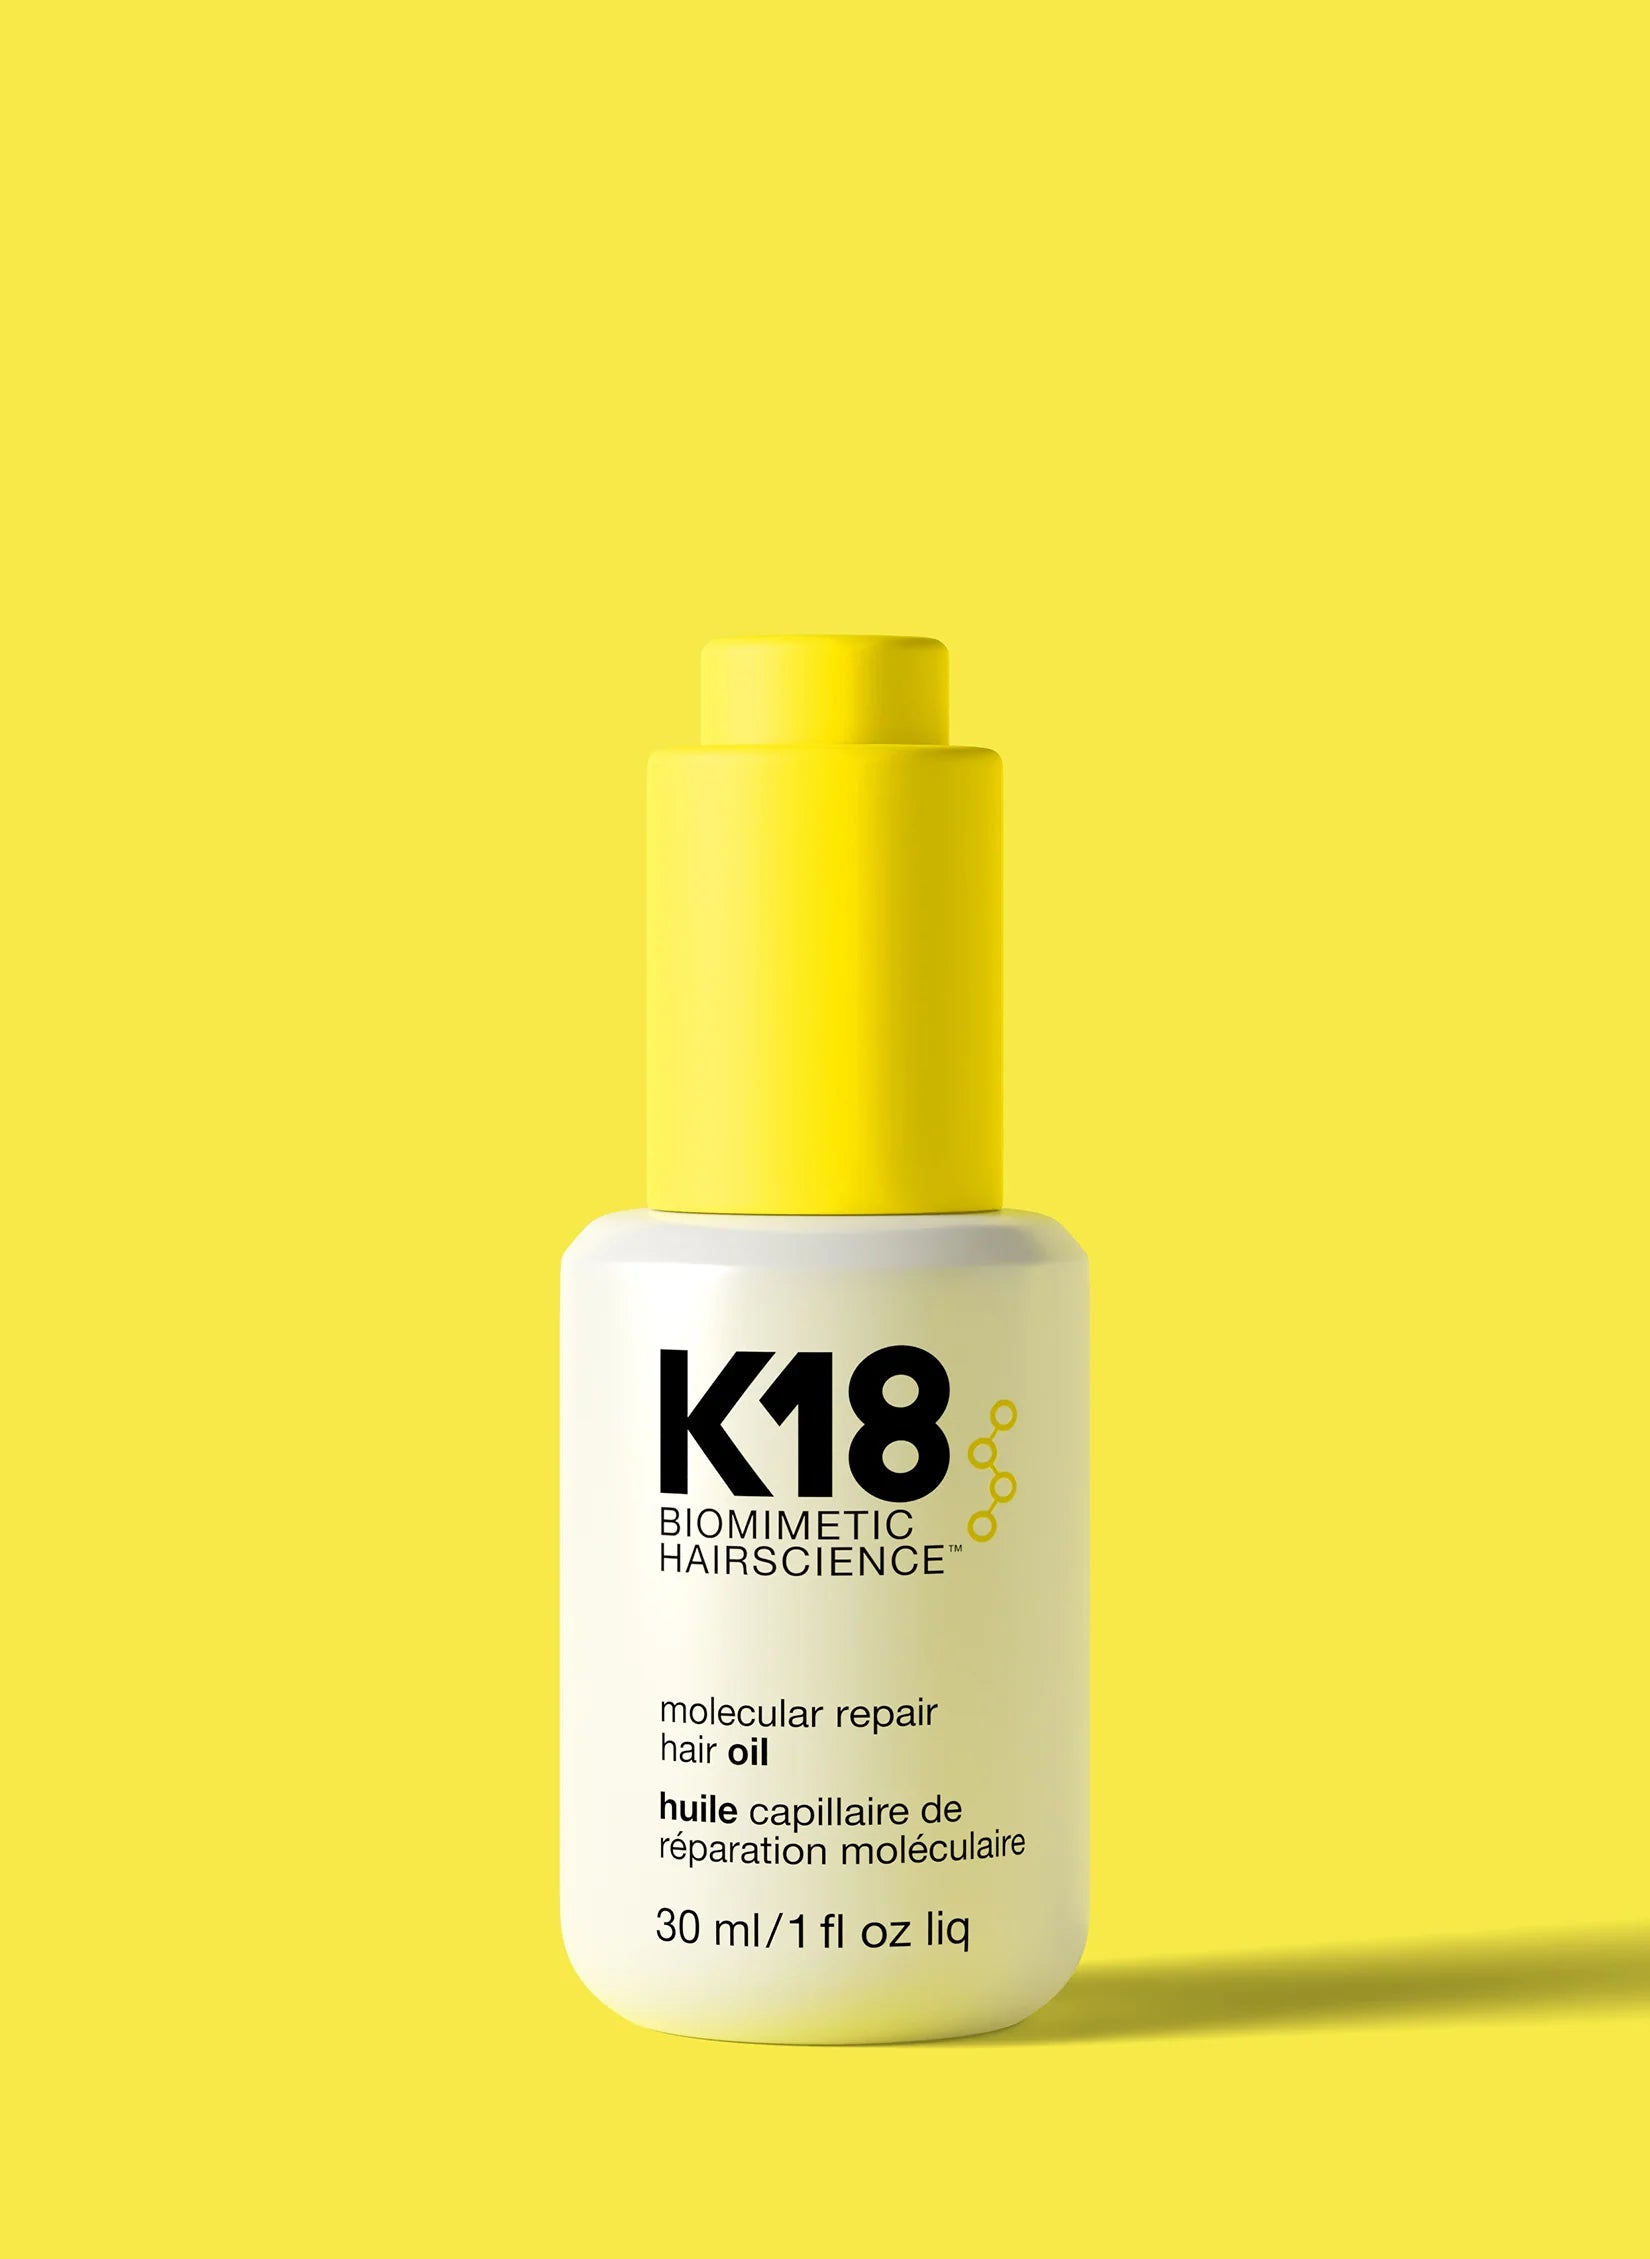 Molecular Repair Hair Oil by K18